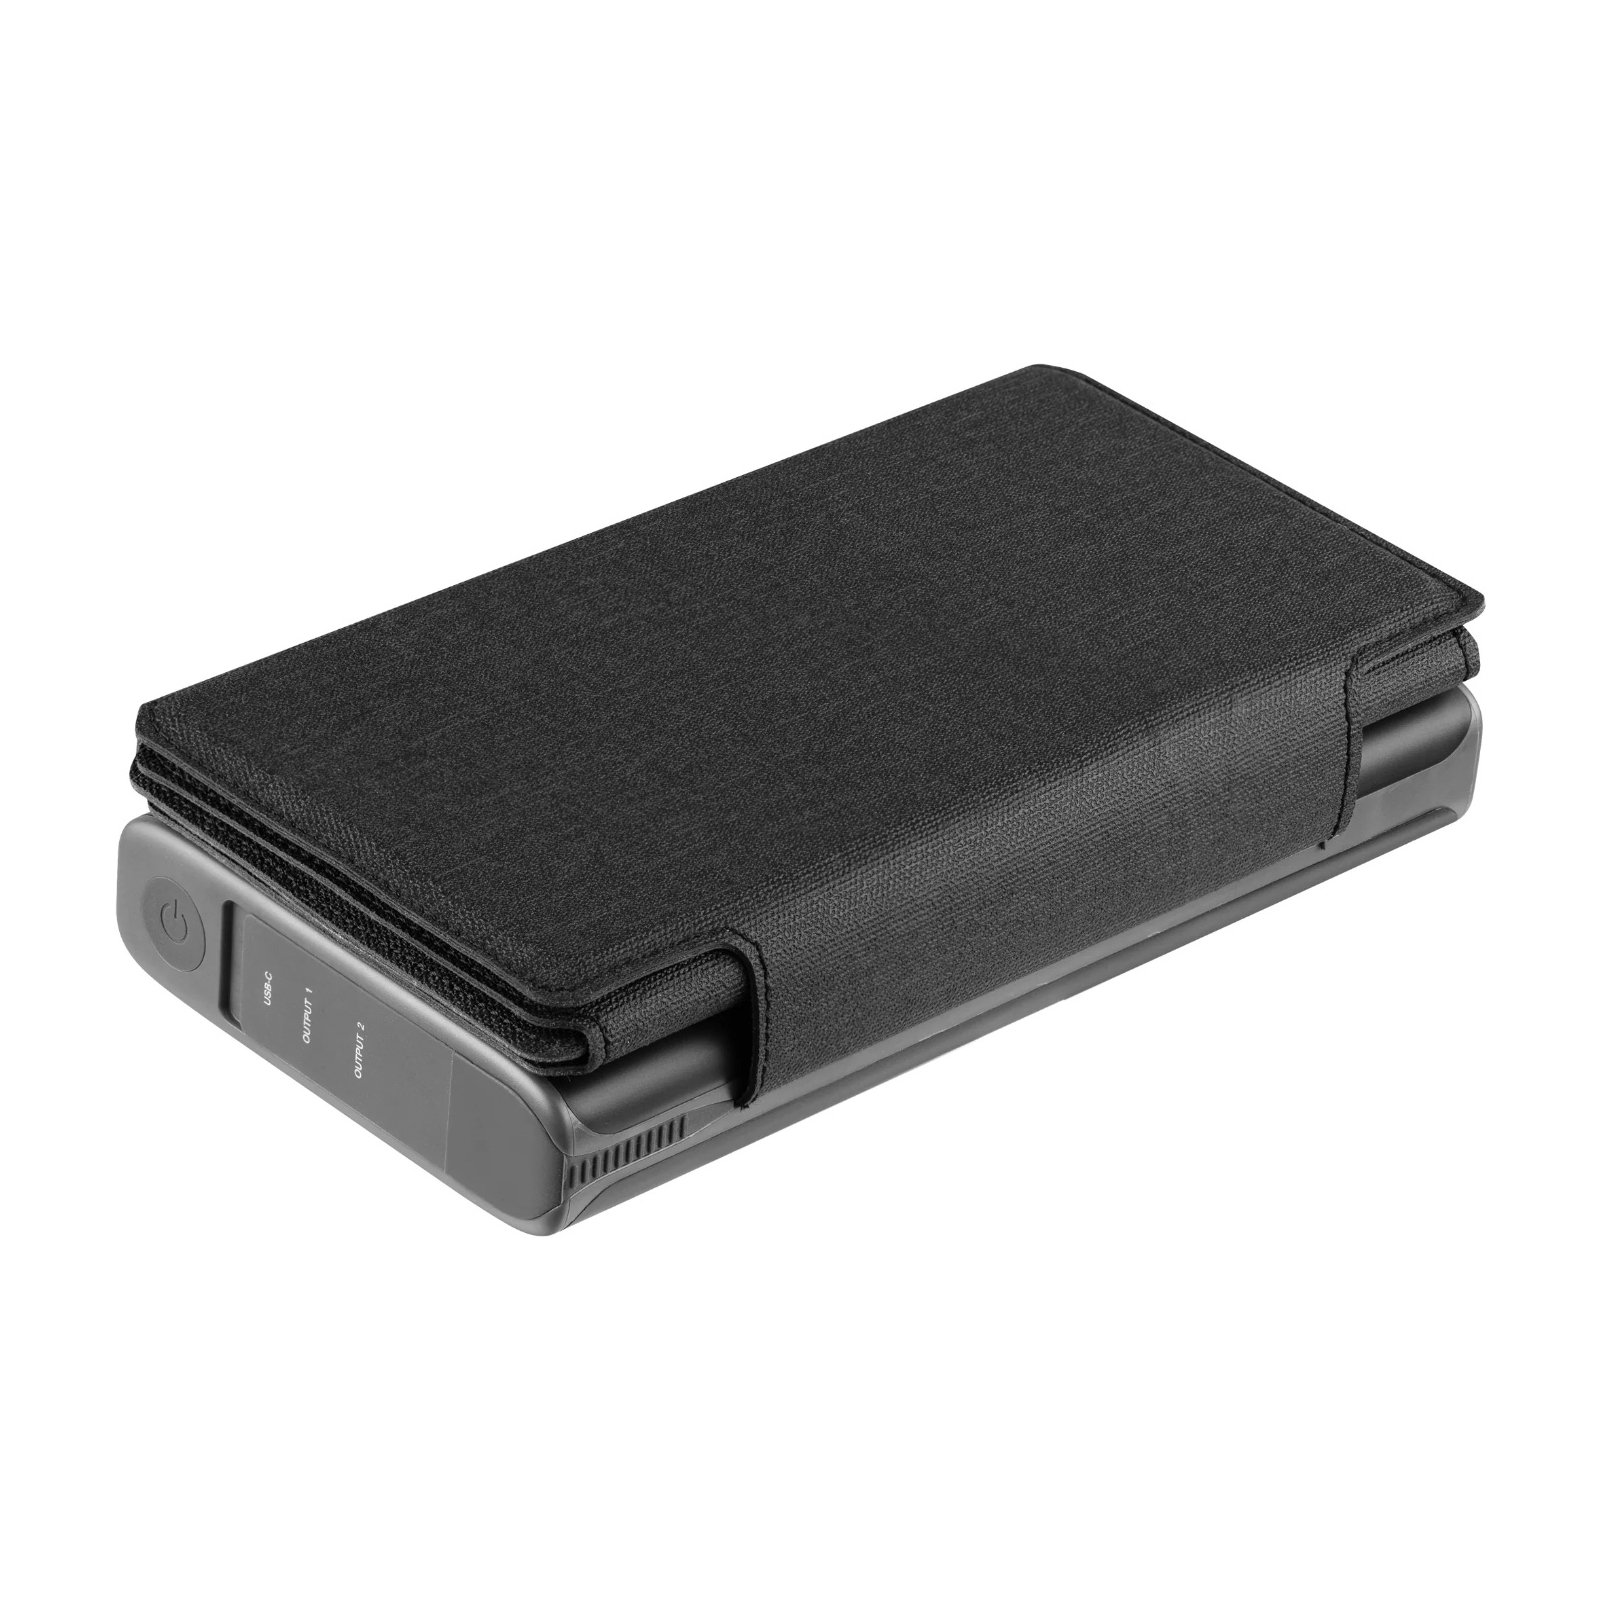 Батарея универсальная Sandberg 25000mAh, Solar 4-Panel/8W, USB-C input/output(18W max), USB-A*2/3A(Max) (420-56) изображение 2